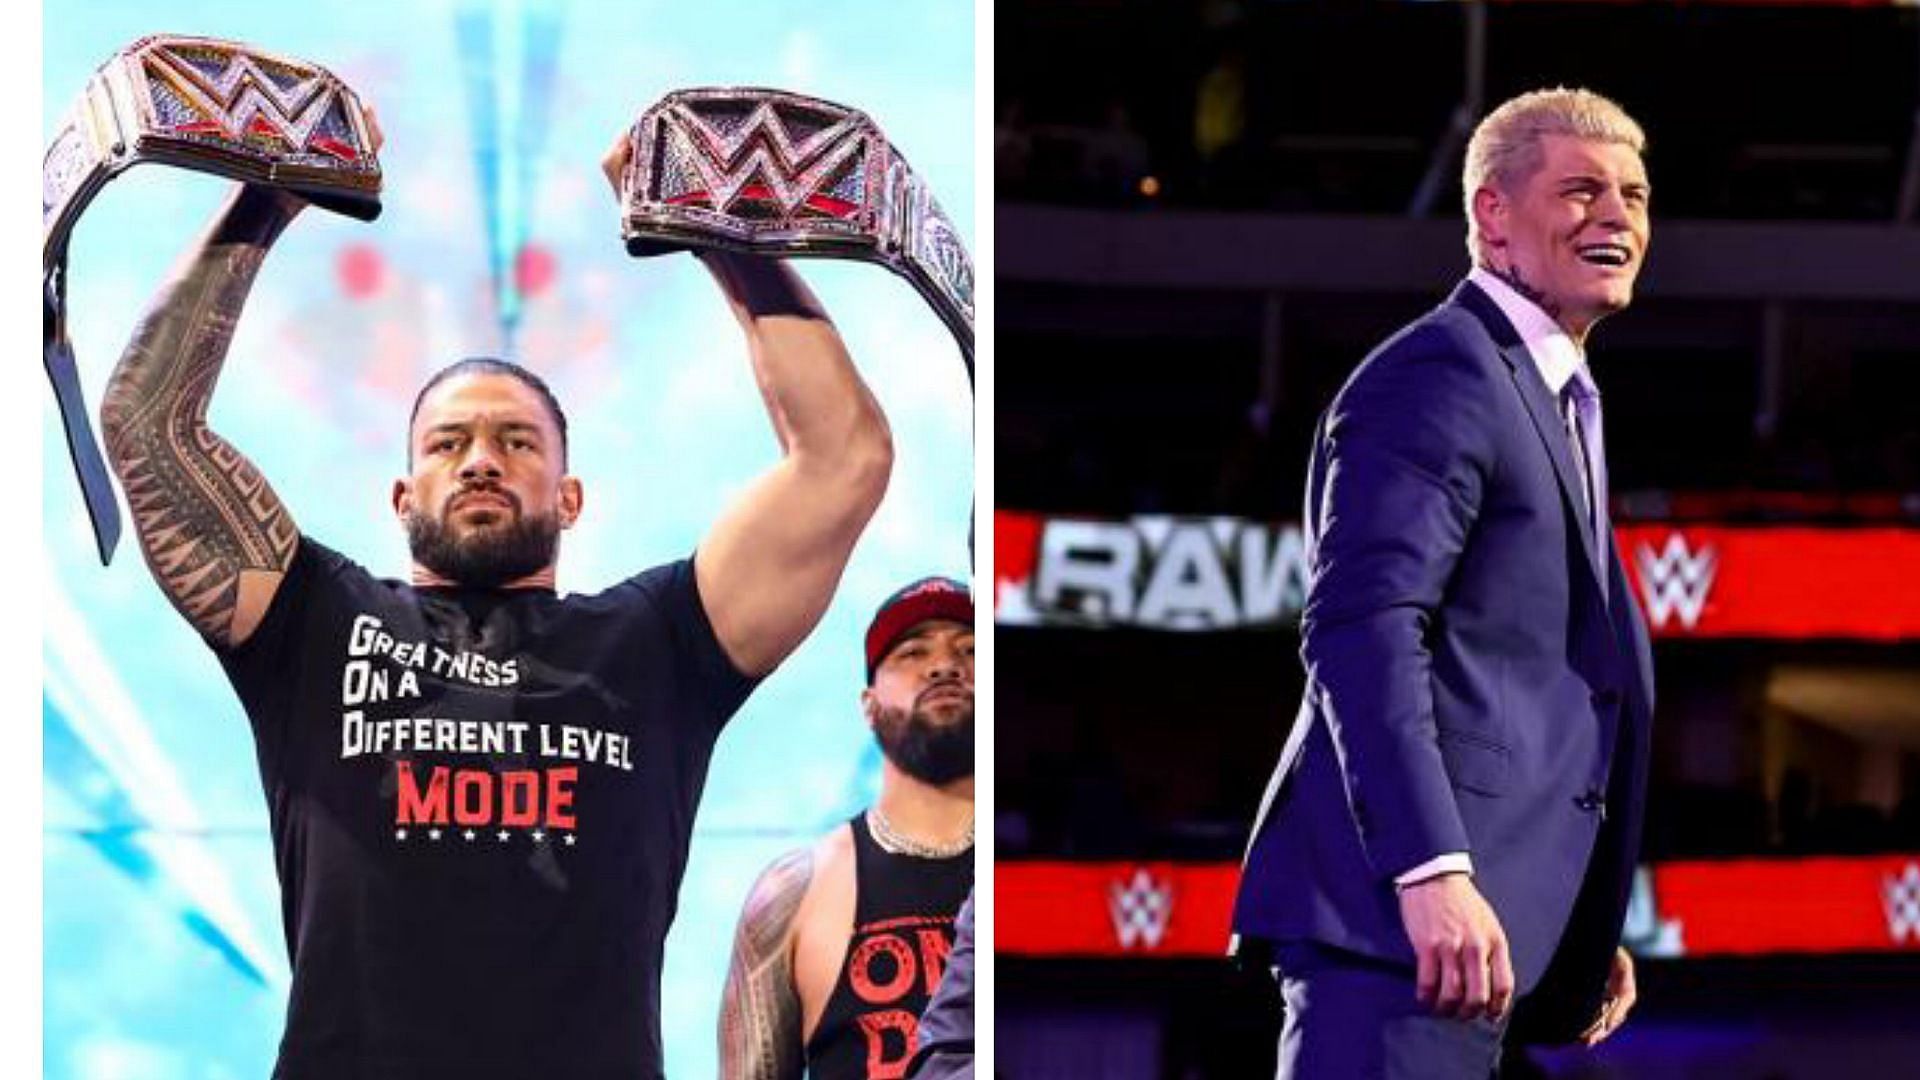 Cody Rhodes vs. Roman Reigns: An unexpected dream match